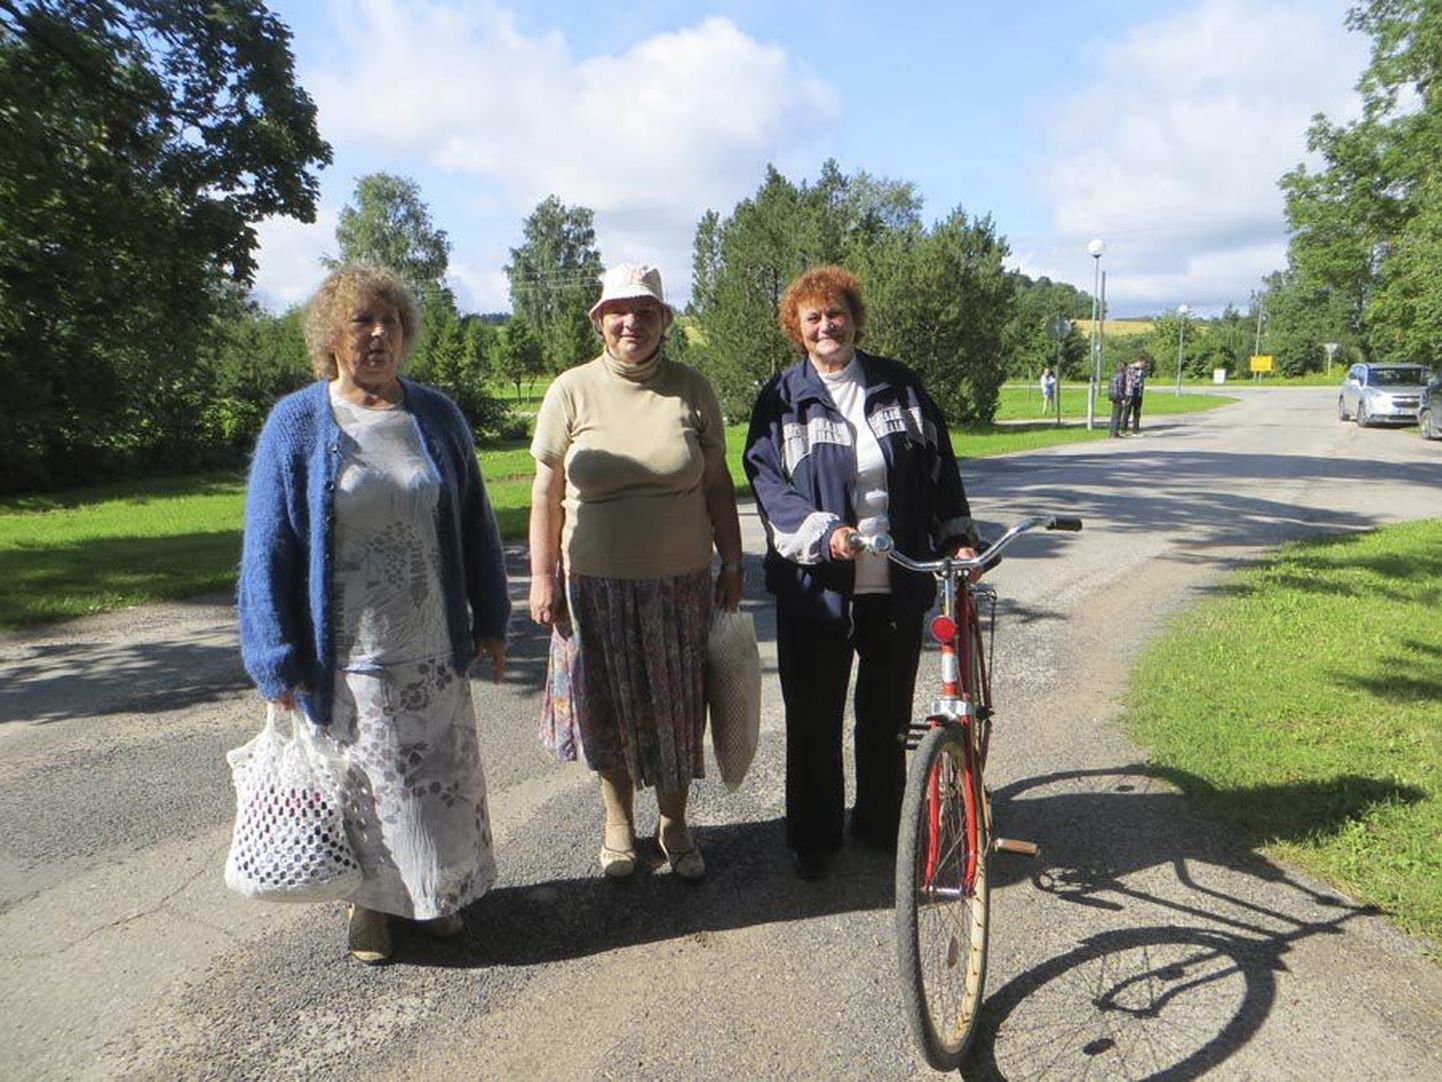 Ummuli naise Anni Randma, Urve Tamela ja Ellen Mägi saive kah vilmin tillikse osa ja pidive selle jaos kapist vällä otsma vana rõõva, poodikoti ja kuuri alt veneaigse jalgratta.